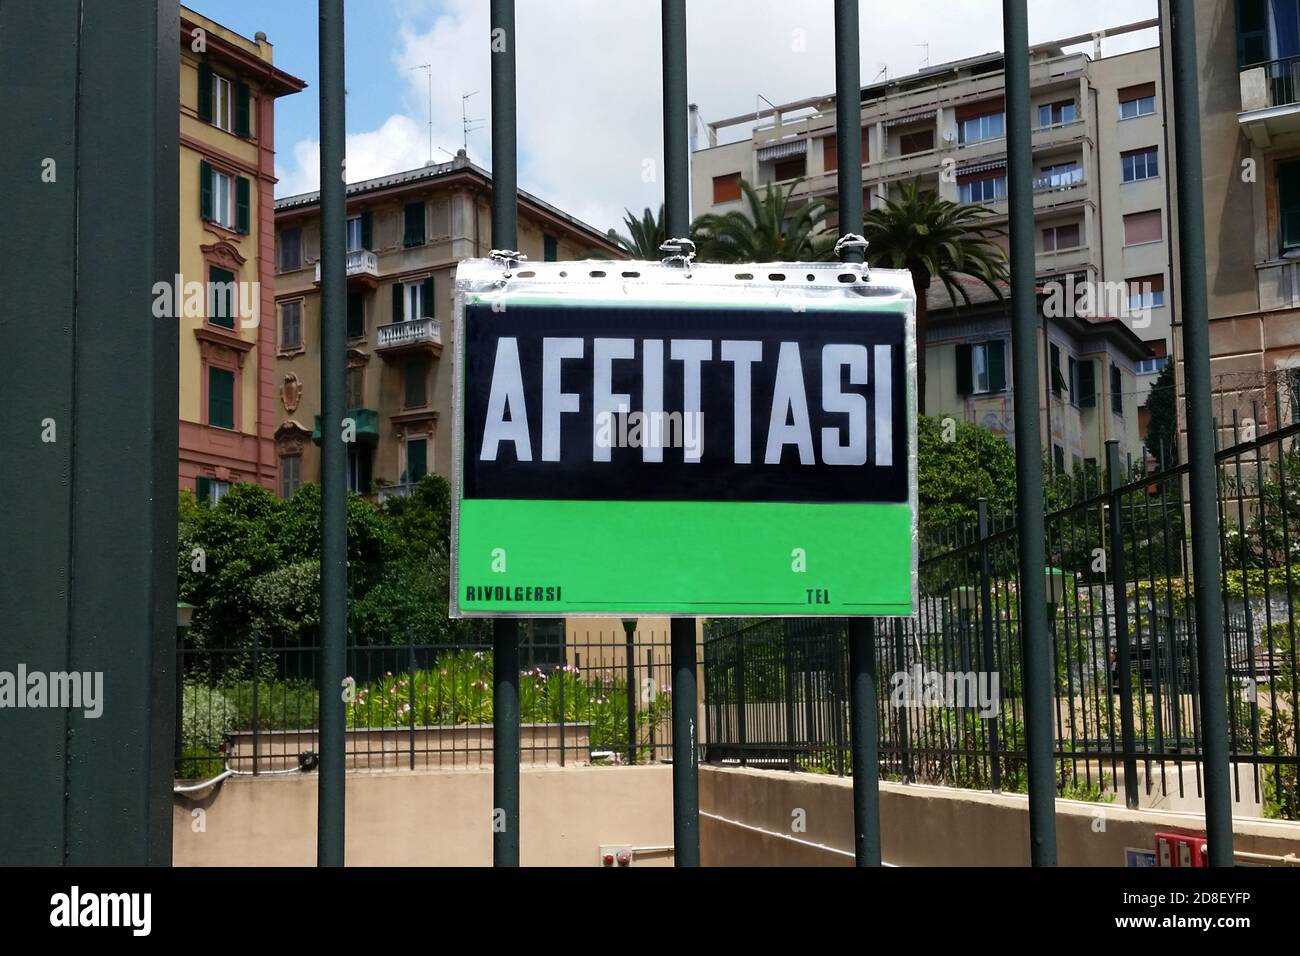 Immobiliare in affitto cartello verde su cancello di fronte ad un gruppo di edifici residenziali in Italia. Segno italiano 'Affittasi' traduzione di 'in affitto' Foto Stock